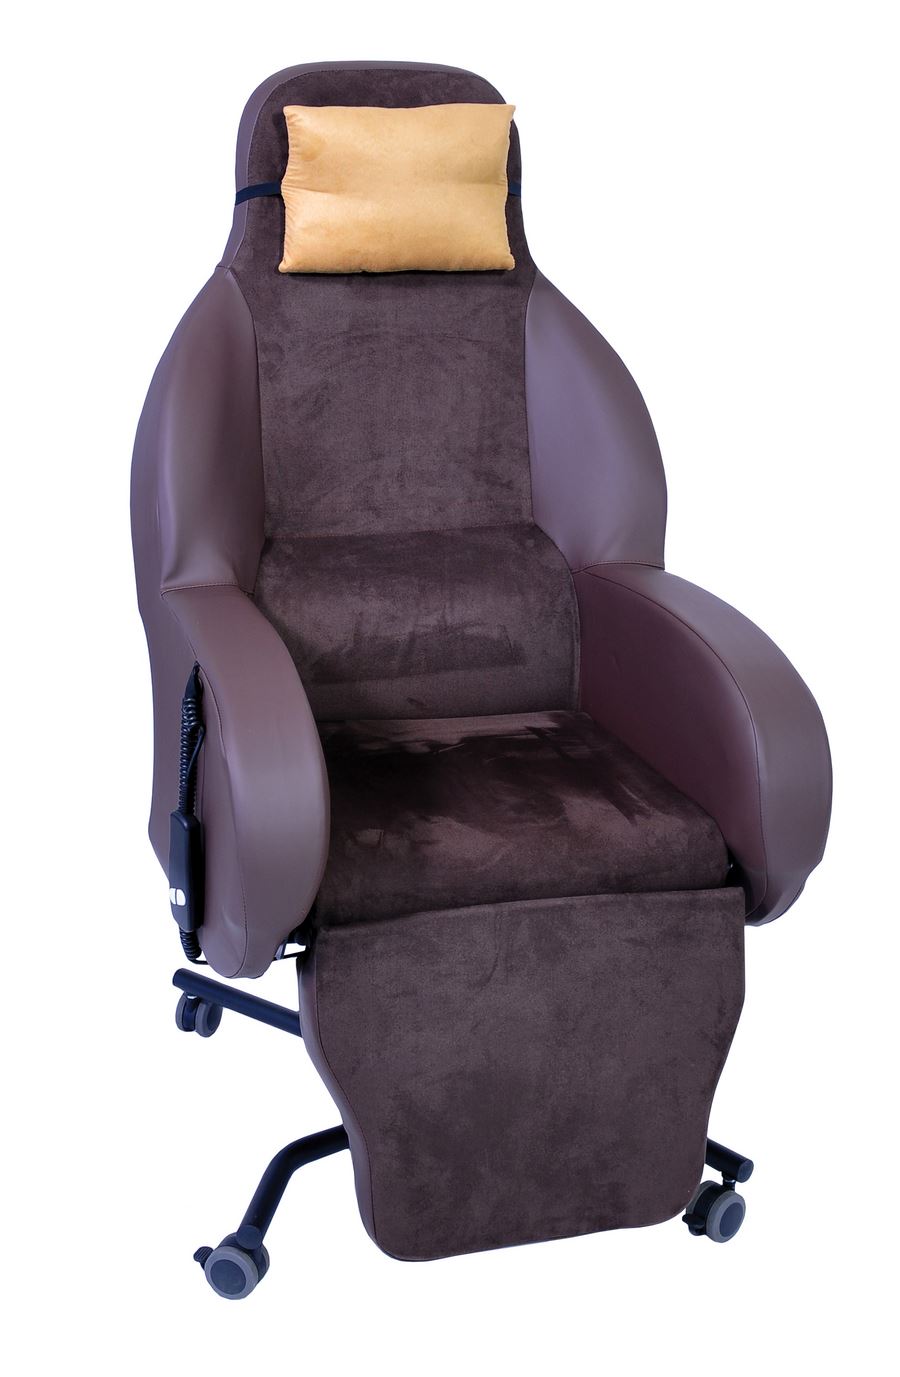 Les fauteuils roulants « conforts » Siège coquille Soffa Parapharm